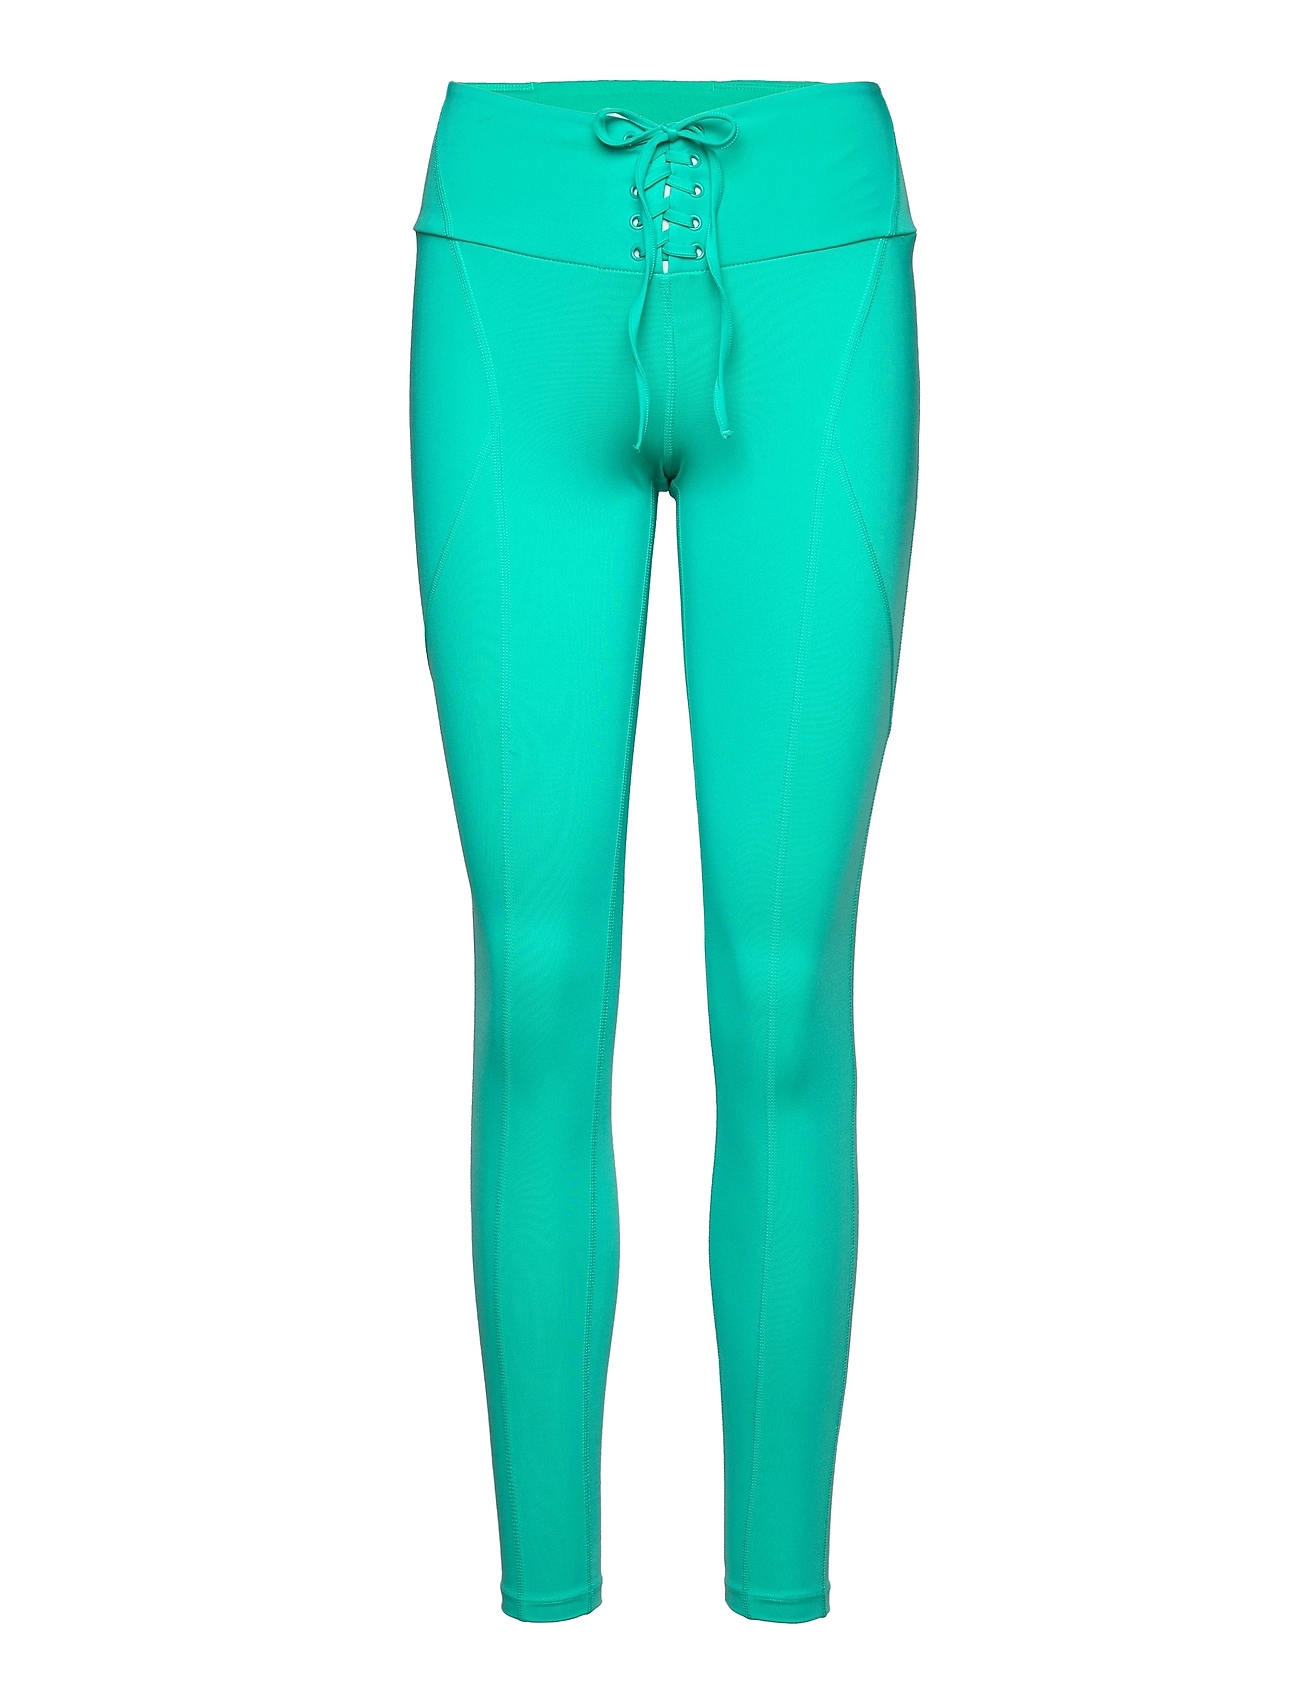 Guess Activewear Agatha Leggings 4/4 – leggings & tights – shop at Booztlet